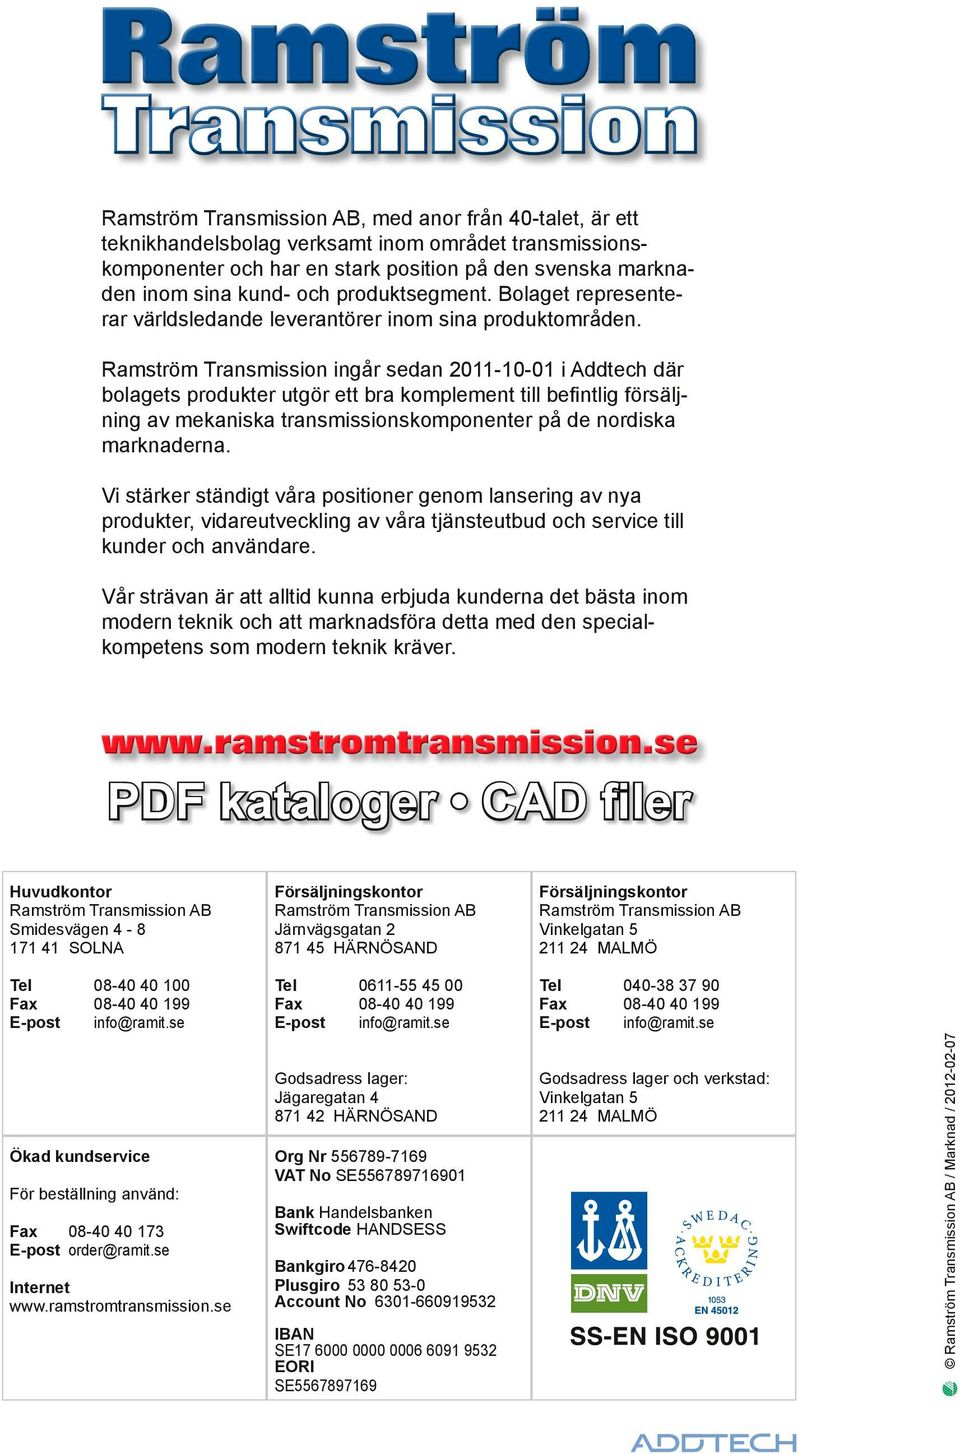 Ramström Transmission ingår sedan 2011-10-01 i Addtech där bolagets produkter utgör ett bra komplement till befintlig försäljning av mekaniska transmissionskomponenter på de nordiska marknaderna.